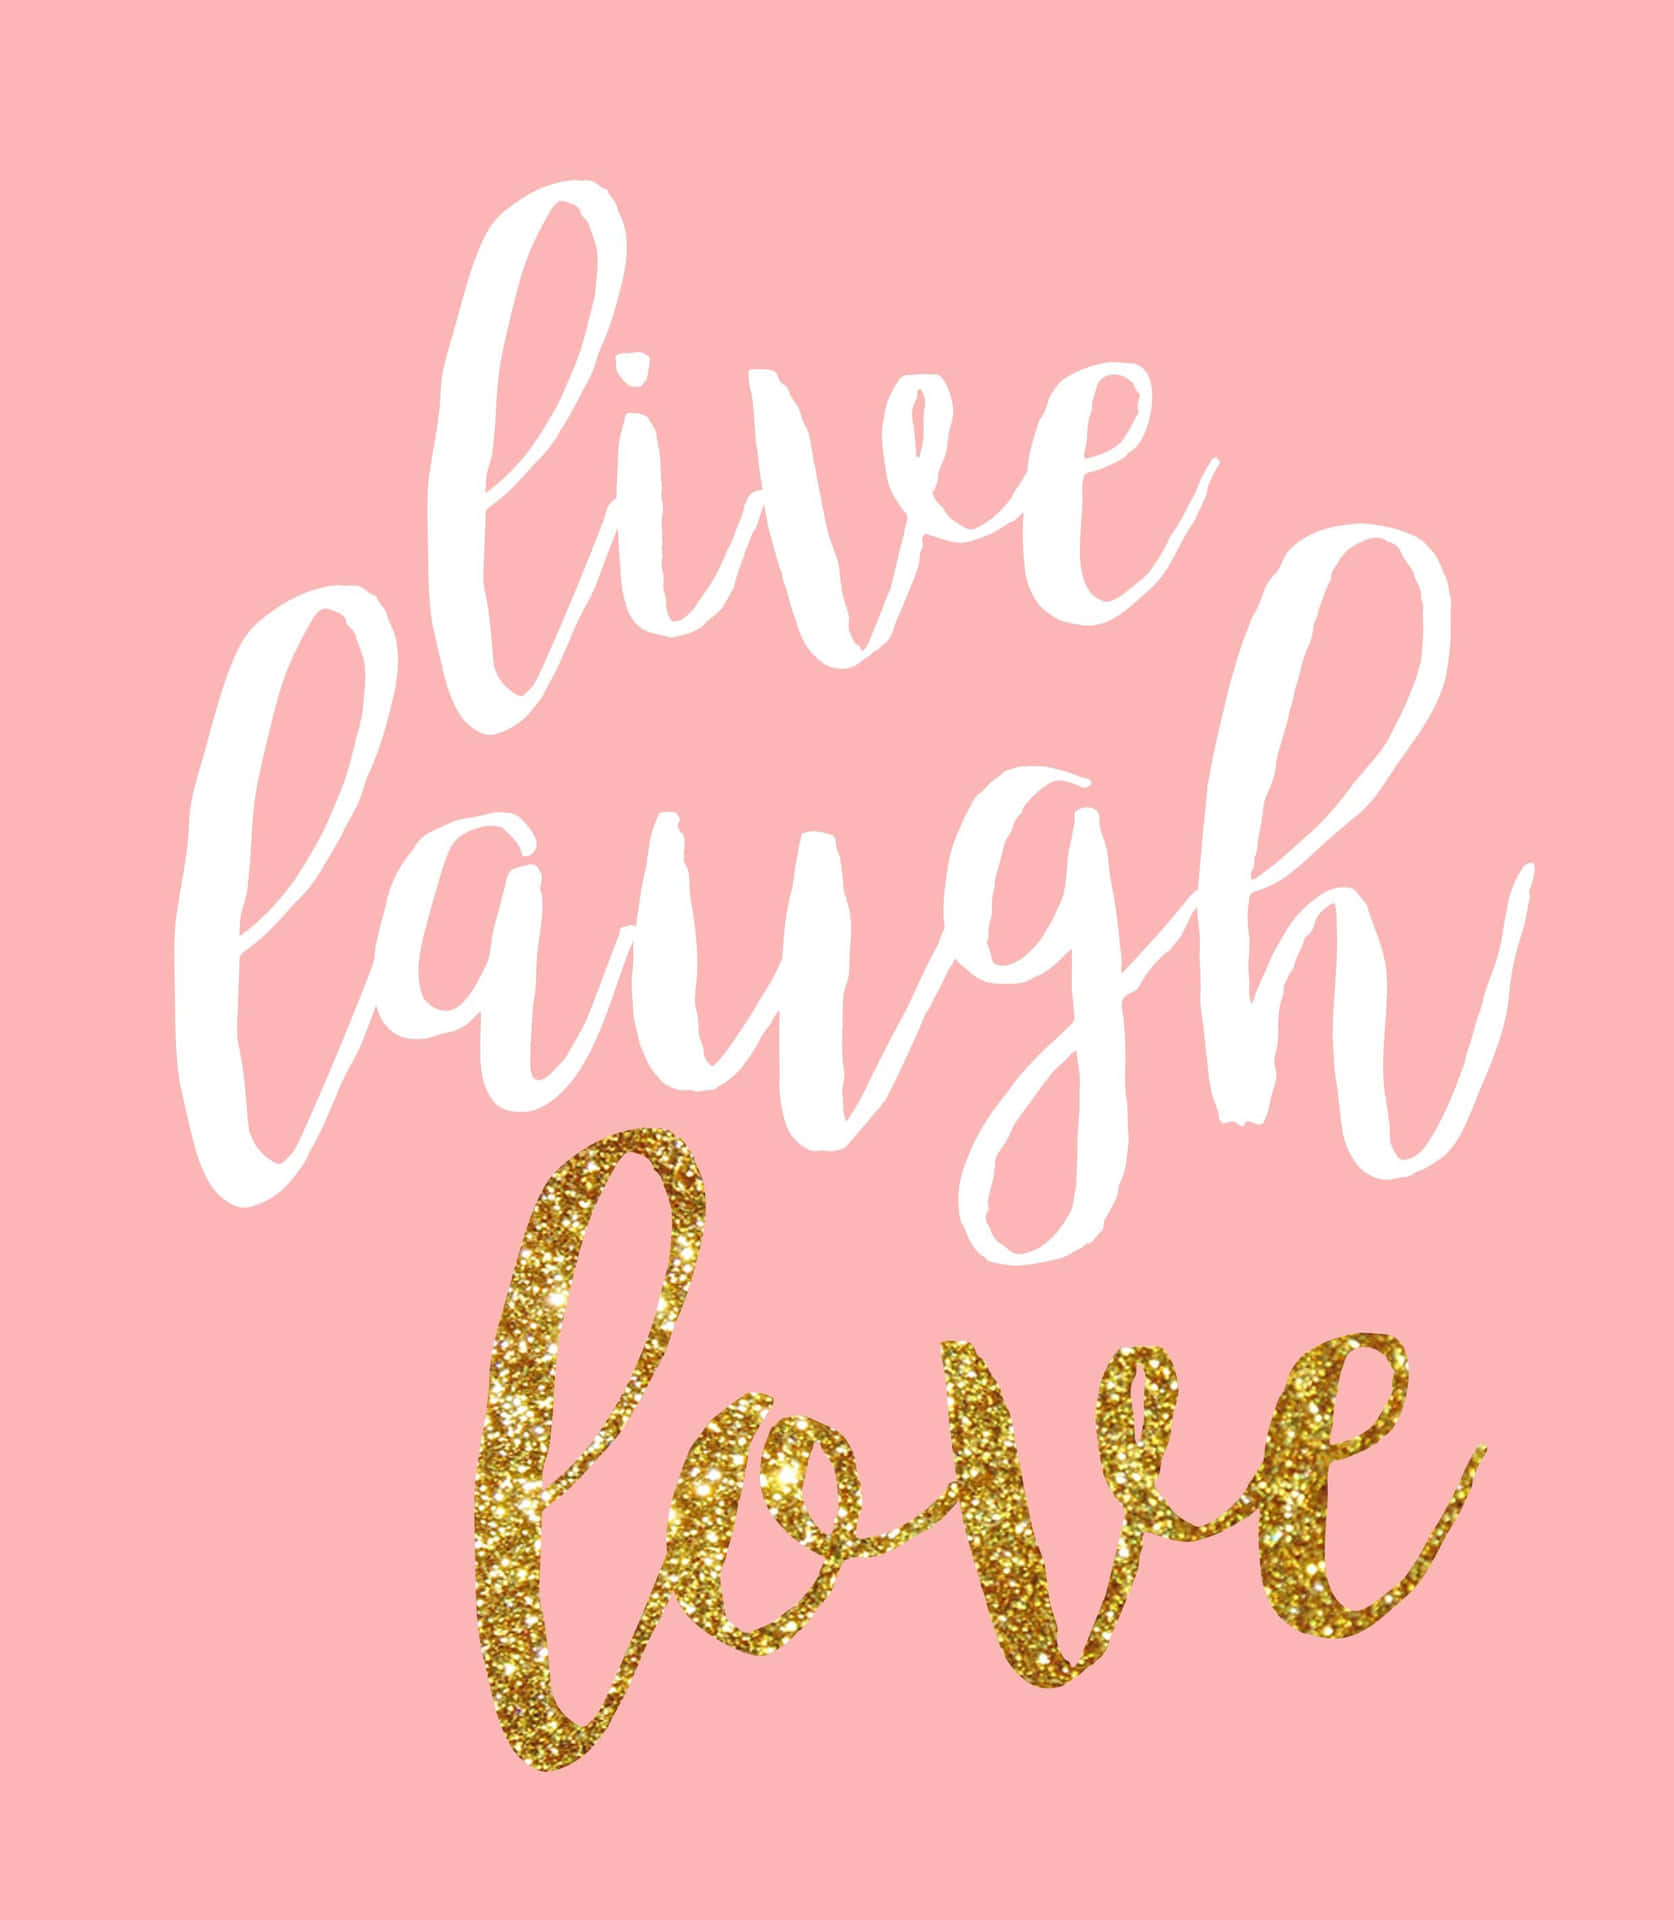 live laugh love desktop backgrounds